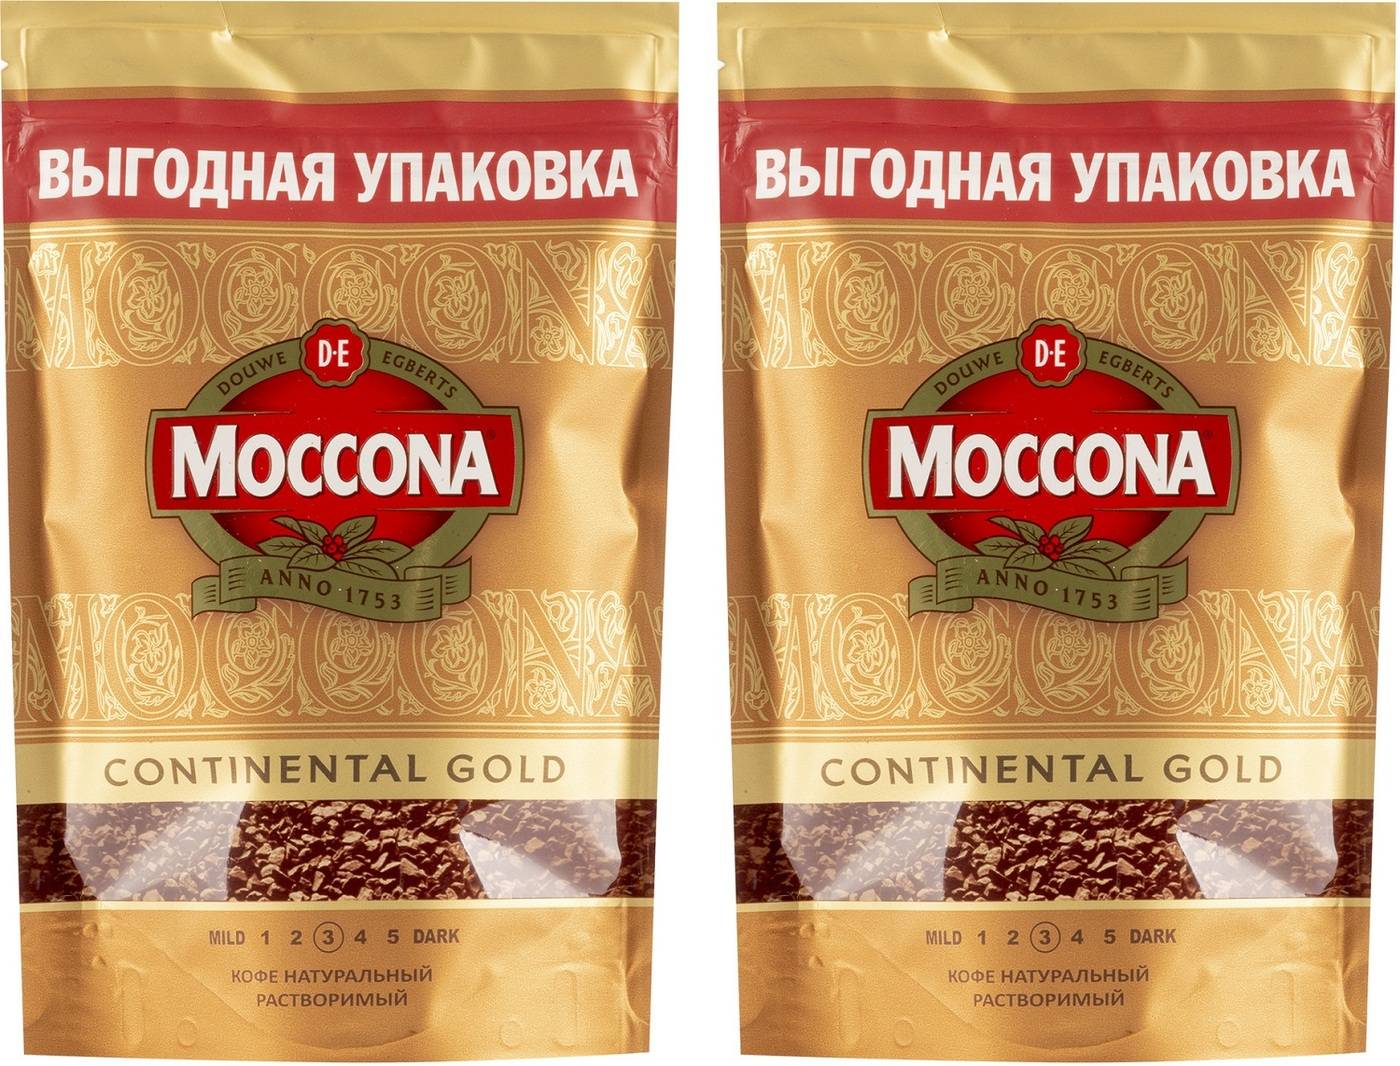 Кофе моккона (moccona): описание, история и виды марки